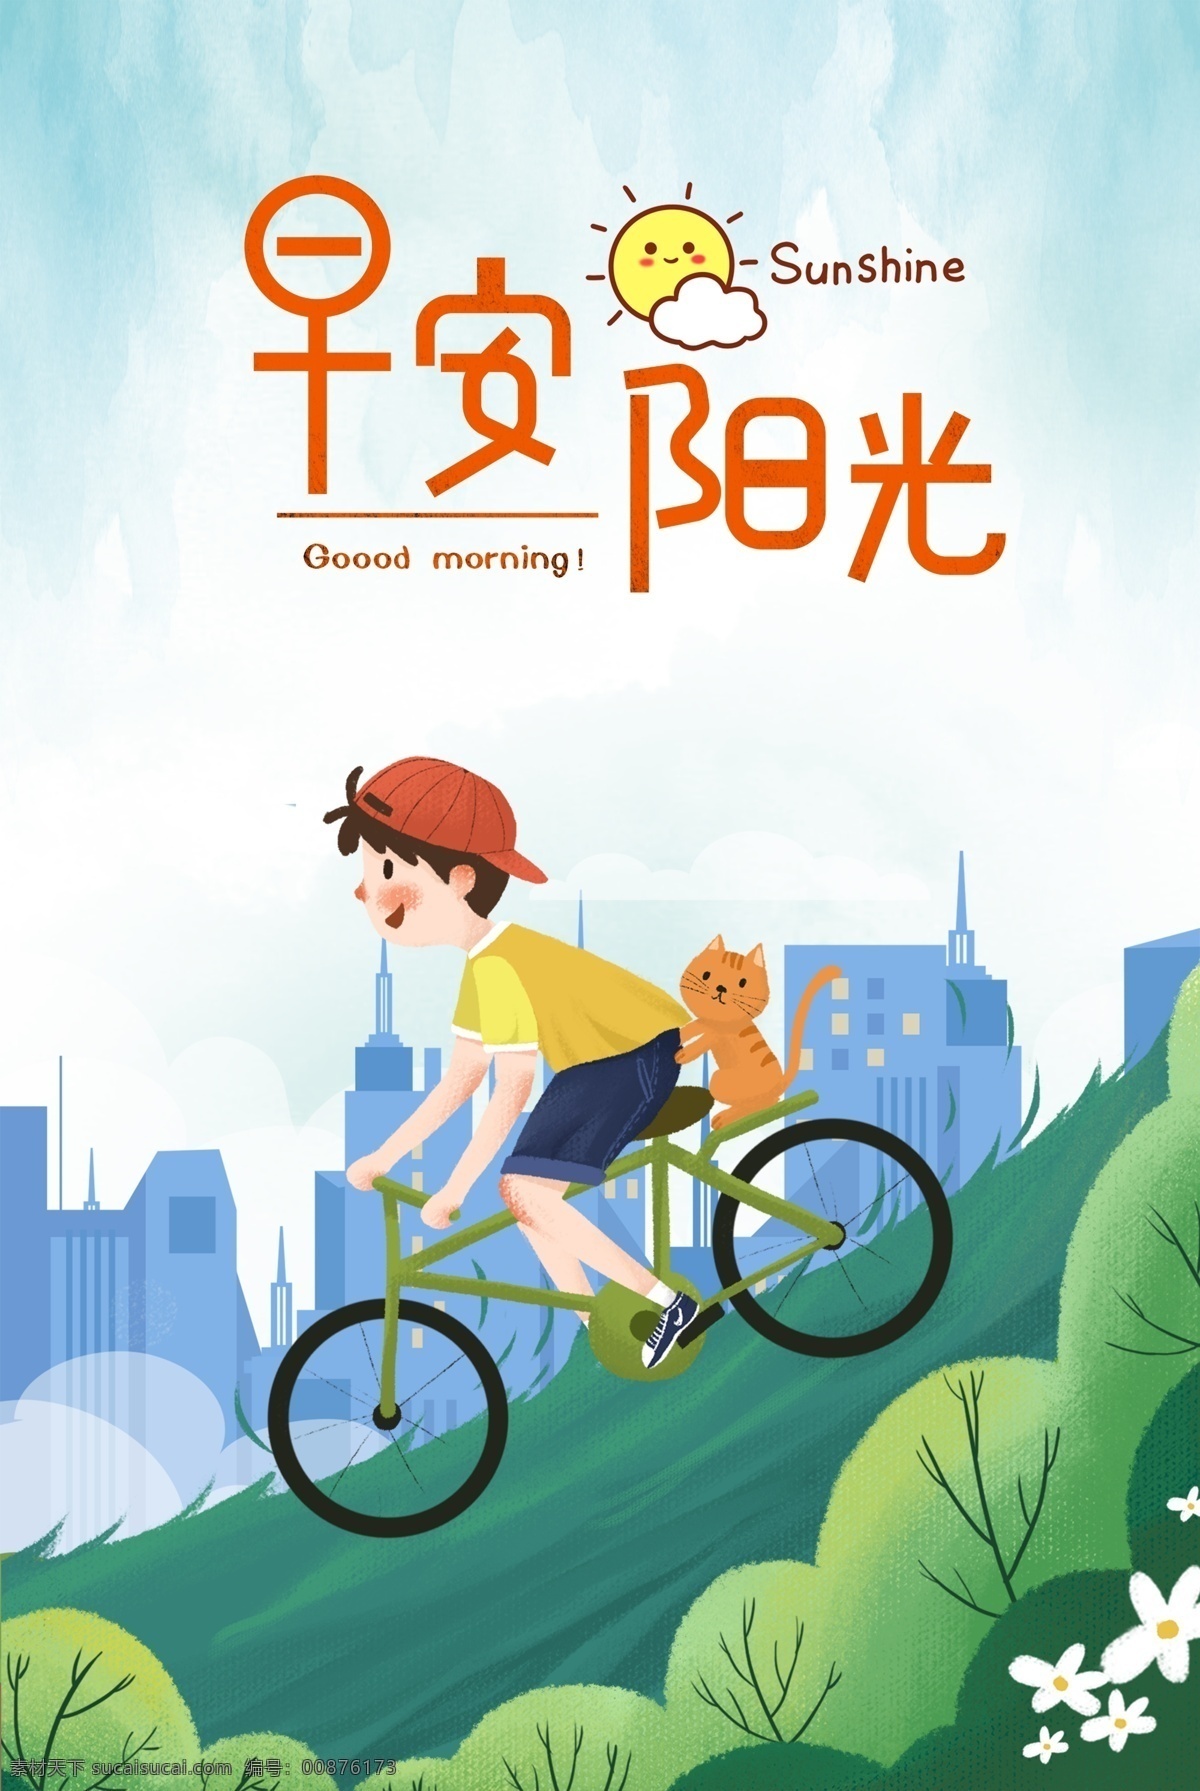 简约 少年 猫咪 骑 单车 早安 背景 图 手绘 小清新 画风 树木 骑单车 早安阳光 背景图 海报 宠物